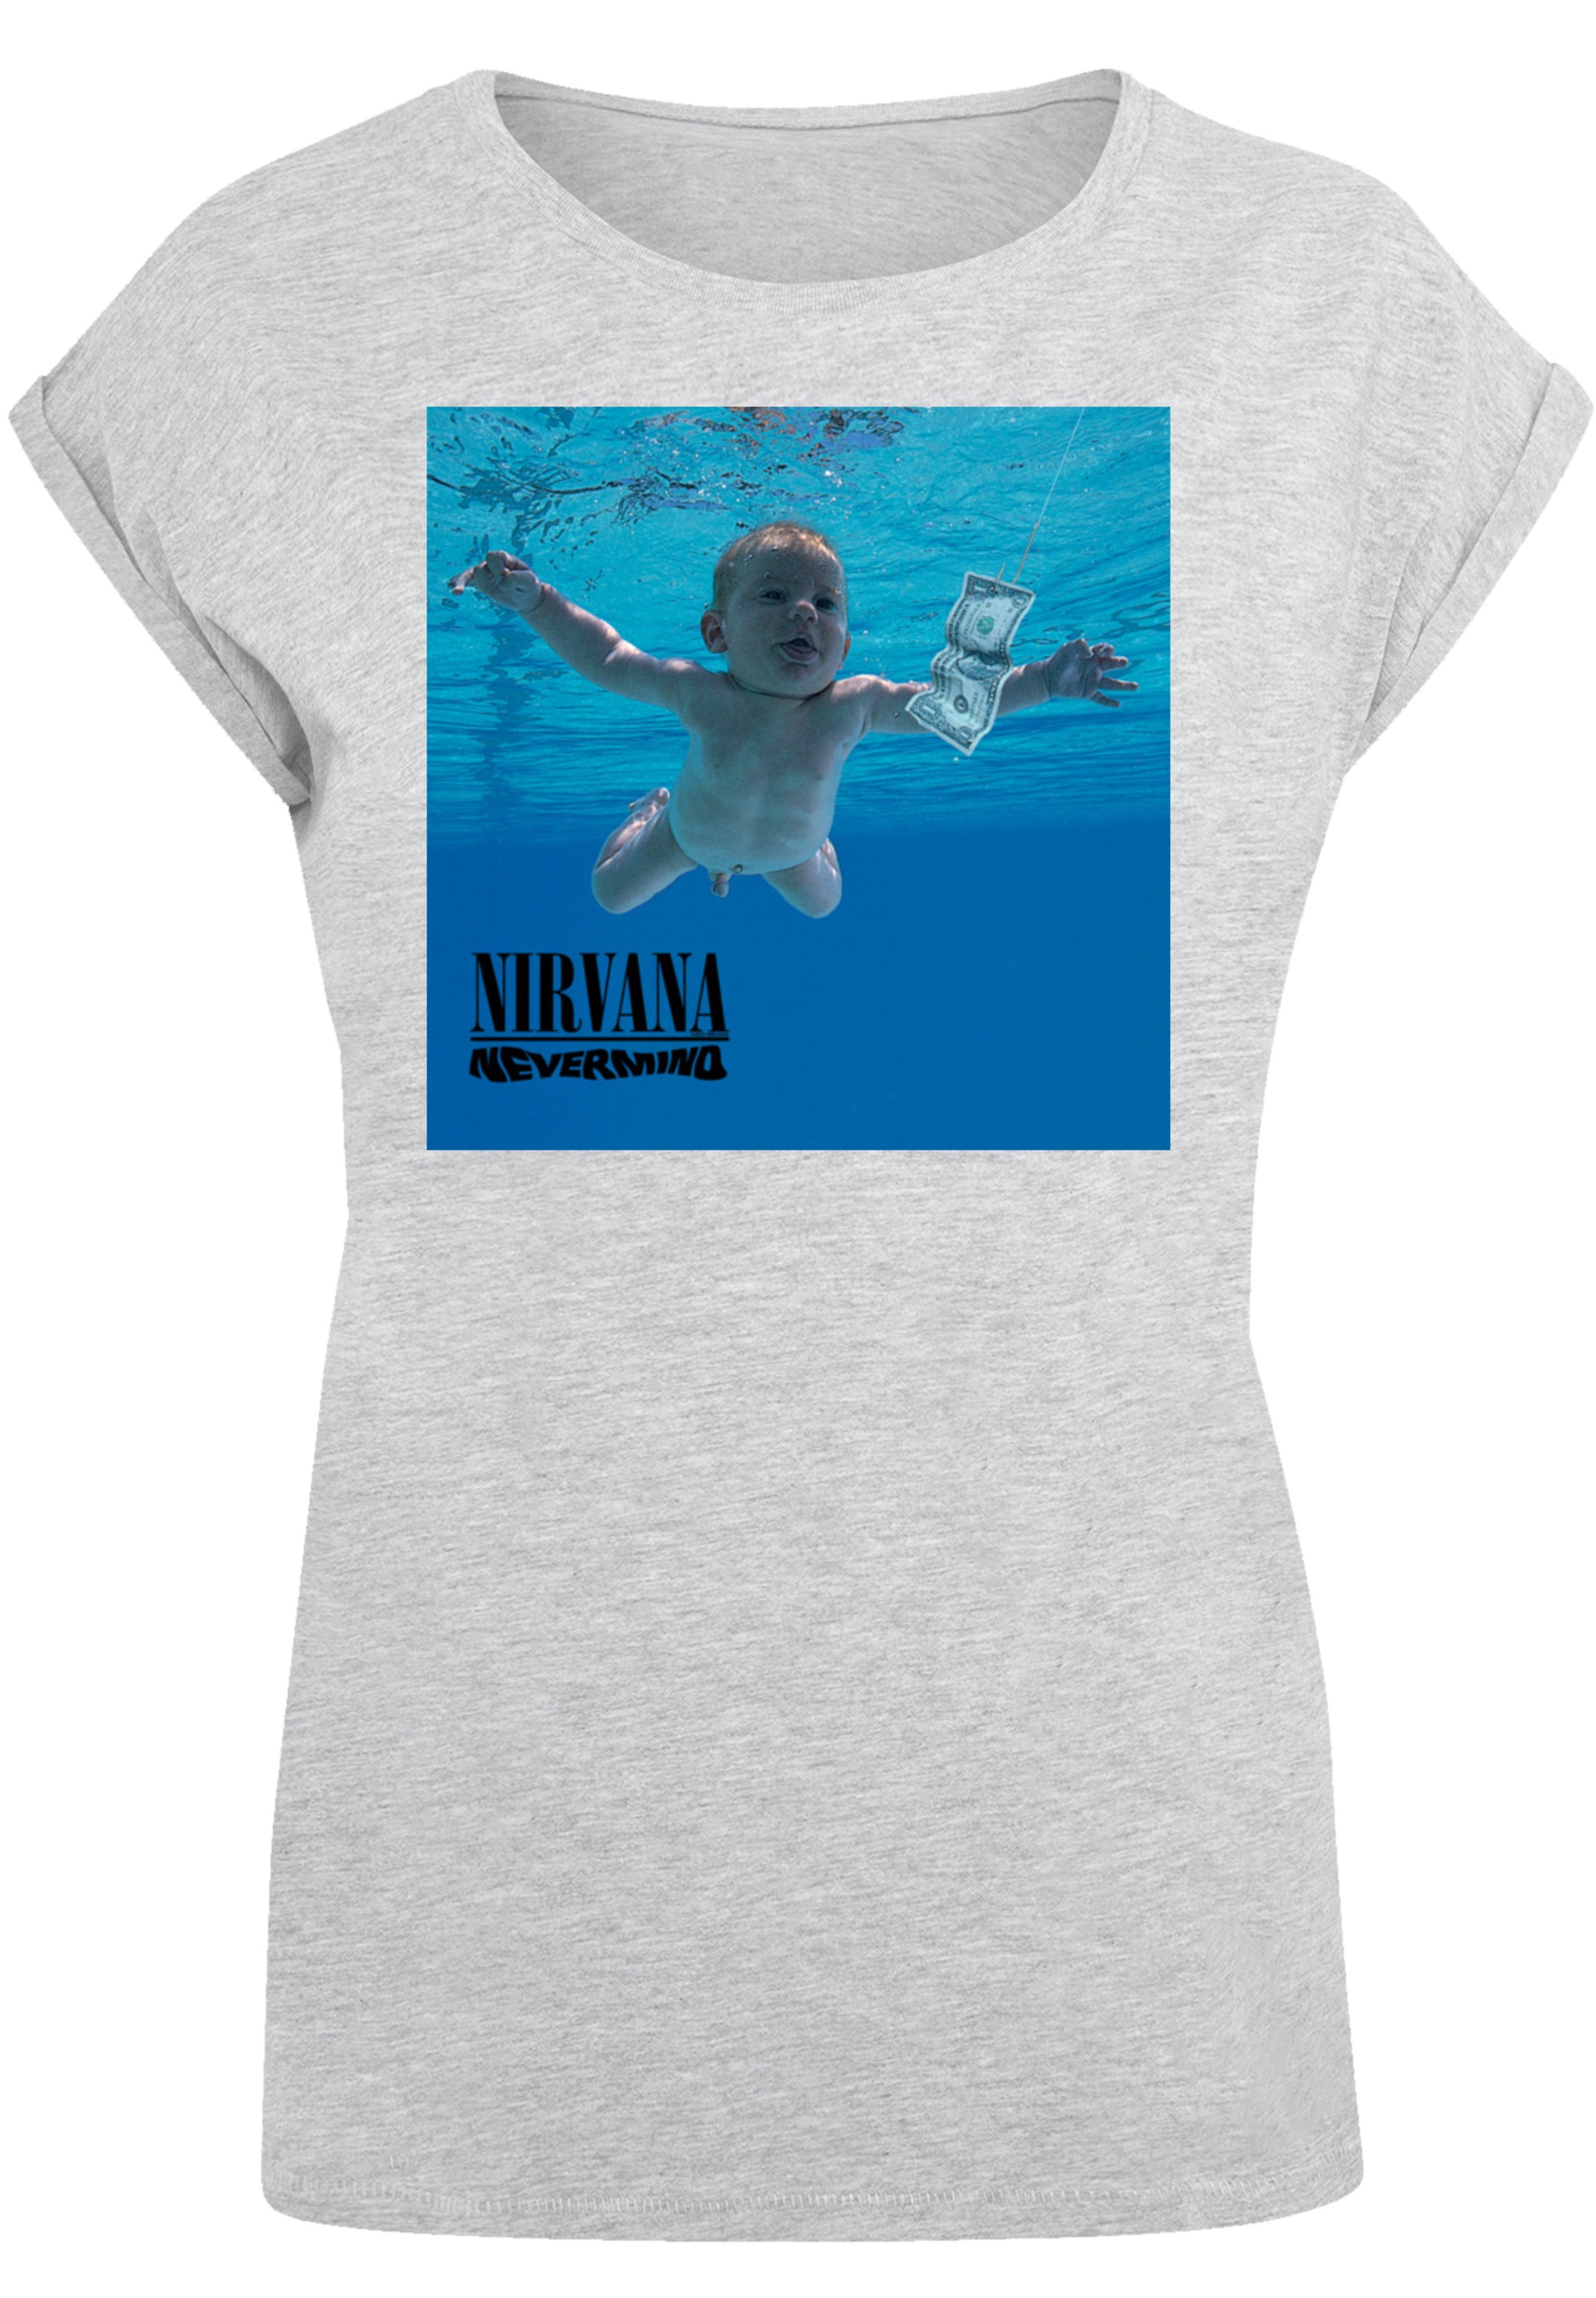 BAUR Album«, Rock kaufen für »Nirvana Premium F4NT4STIC Band T-Shirt Qualität Nevermind |